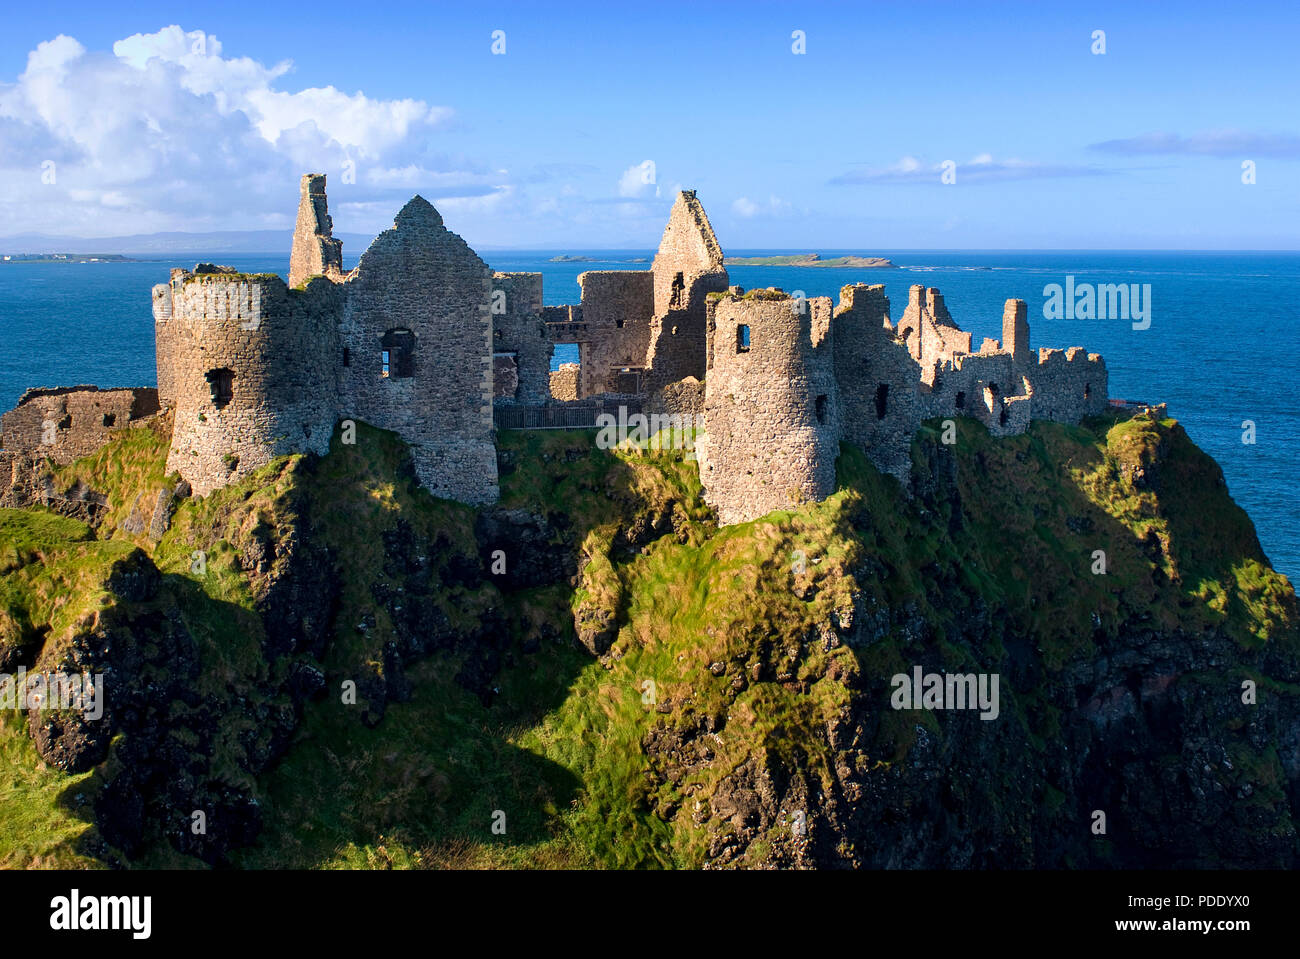 Ruines du château de Dunluce sur la côte irlandaise Banque D'Images